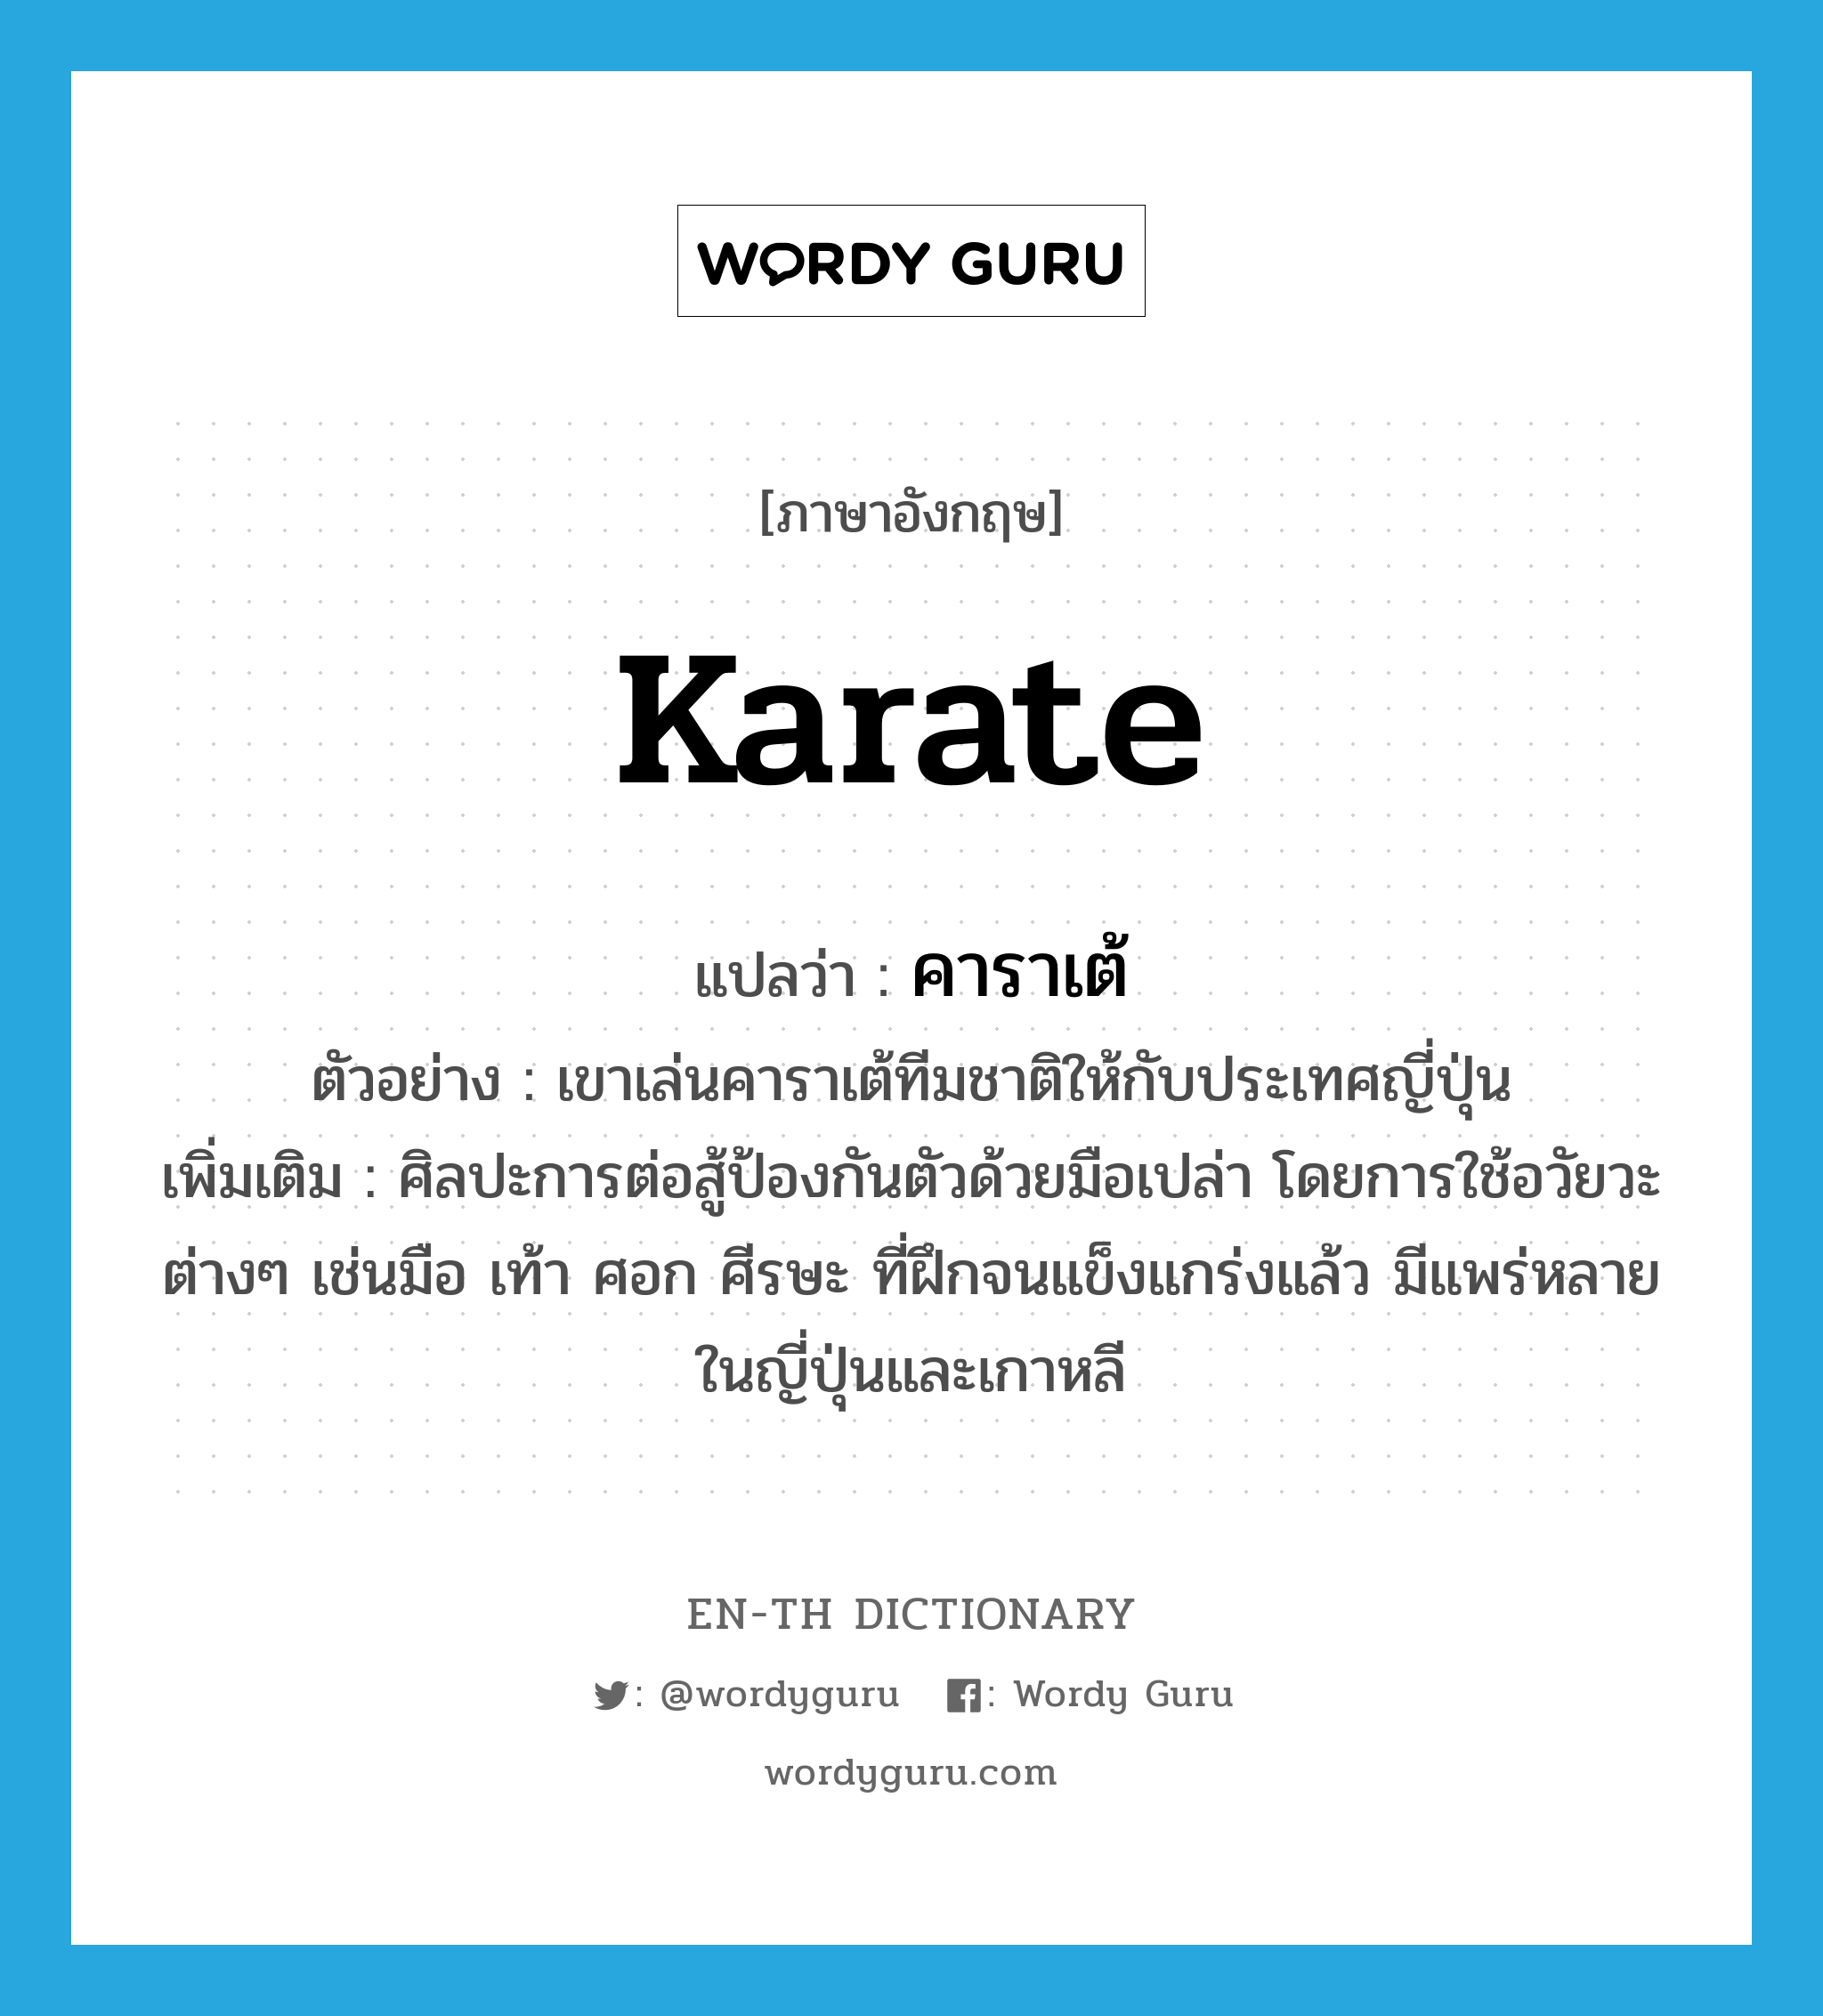 คาราเต้ ภาษาอังกฤษ?, คำศัพท์ภาษาอังกฤษ คาราเต้ แปลว่า karate ประเภท N ตัวอย่าง เขาเล่นคาราเต้ทีมชาติให้กับประเทศญี่ปุ่น เพิ่มเติม ศิลปะการต่อสู้ป้องกันตัวด้วยมือเปล่า โดยการใช้อวัยวะต่างๆ เช่นมือ เท้า ศอก ศีรษะ ที่ฝึกจนแข็งแกร่งแล้ว มีแพร่หลายในญี่ปุ่นและเกาหลี หมวด N